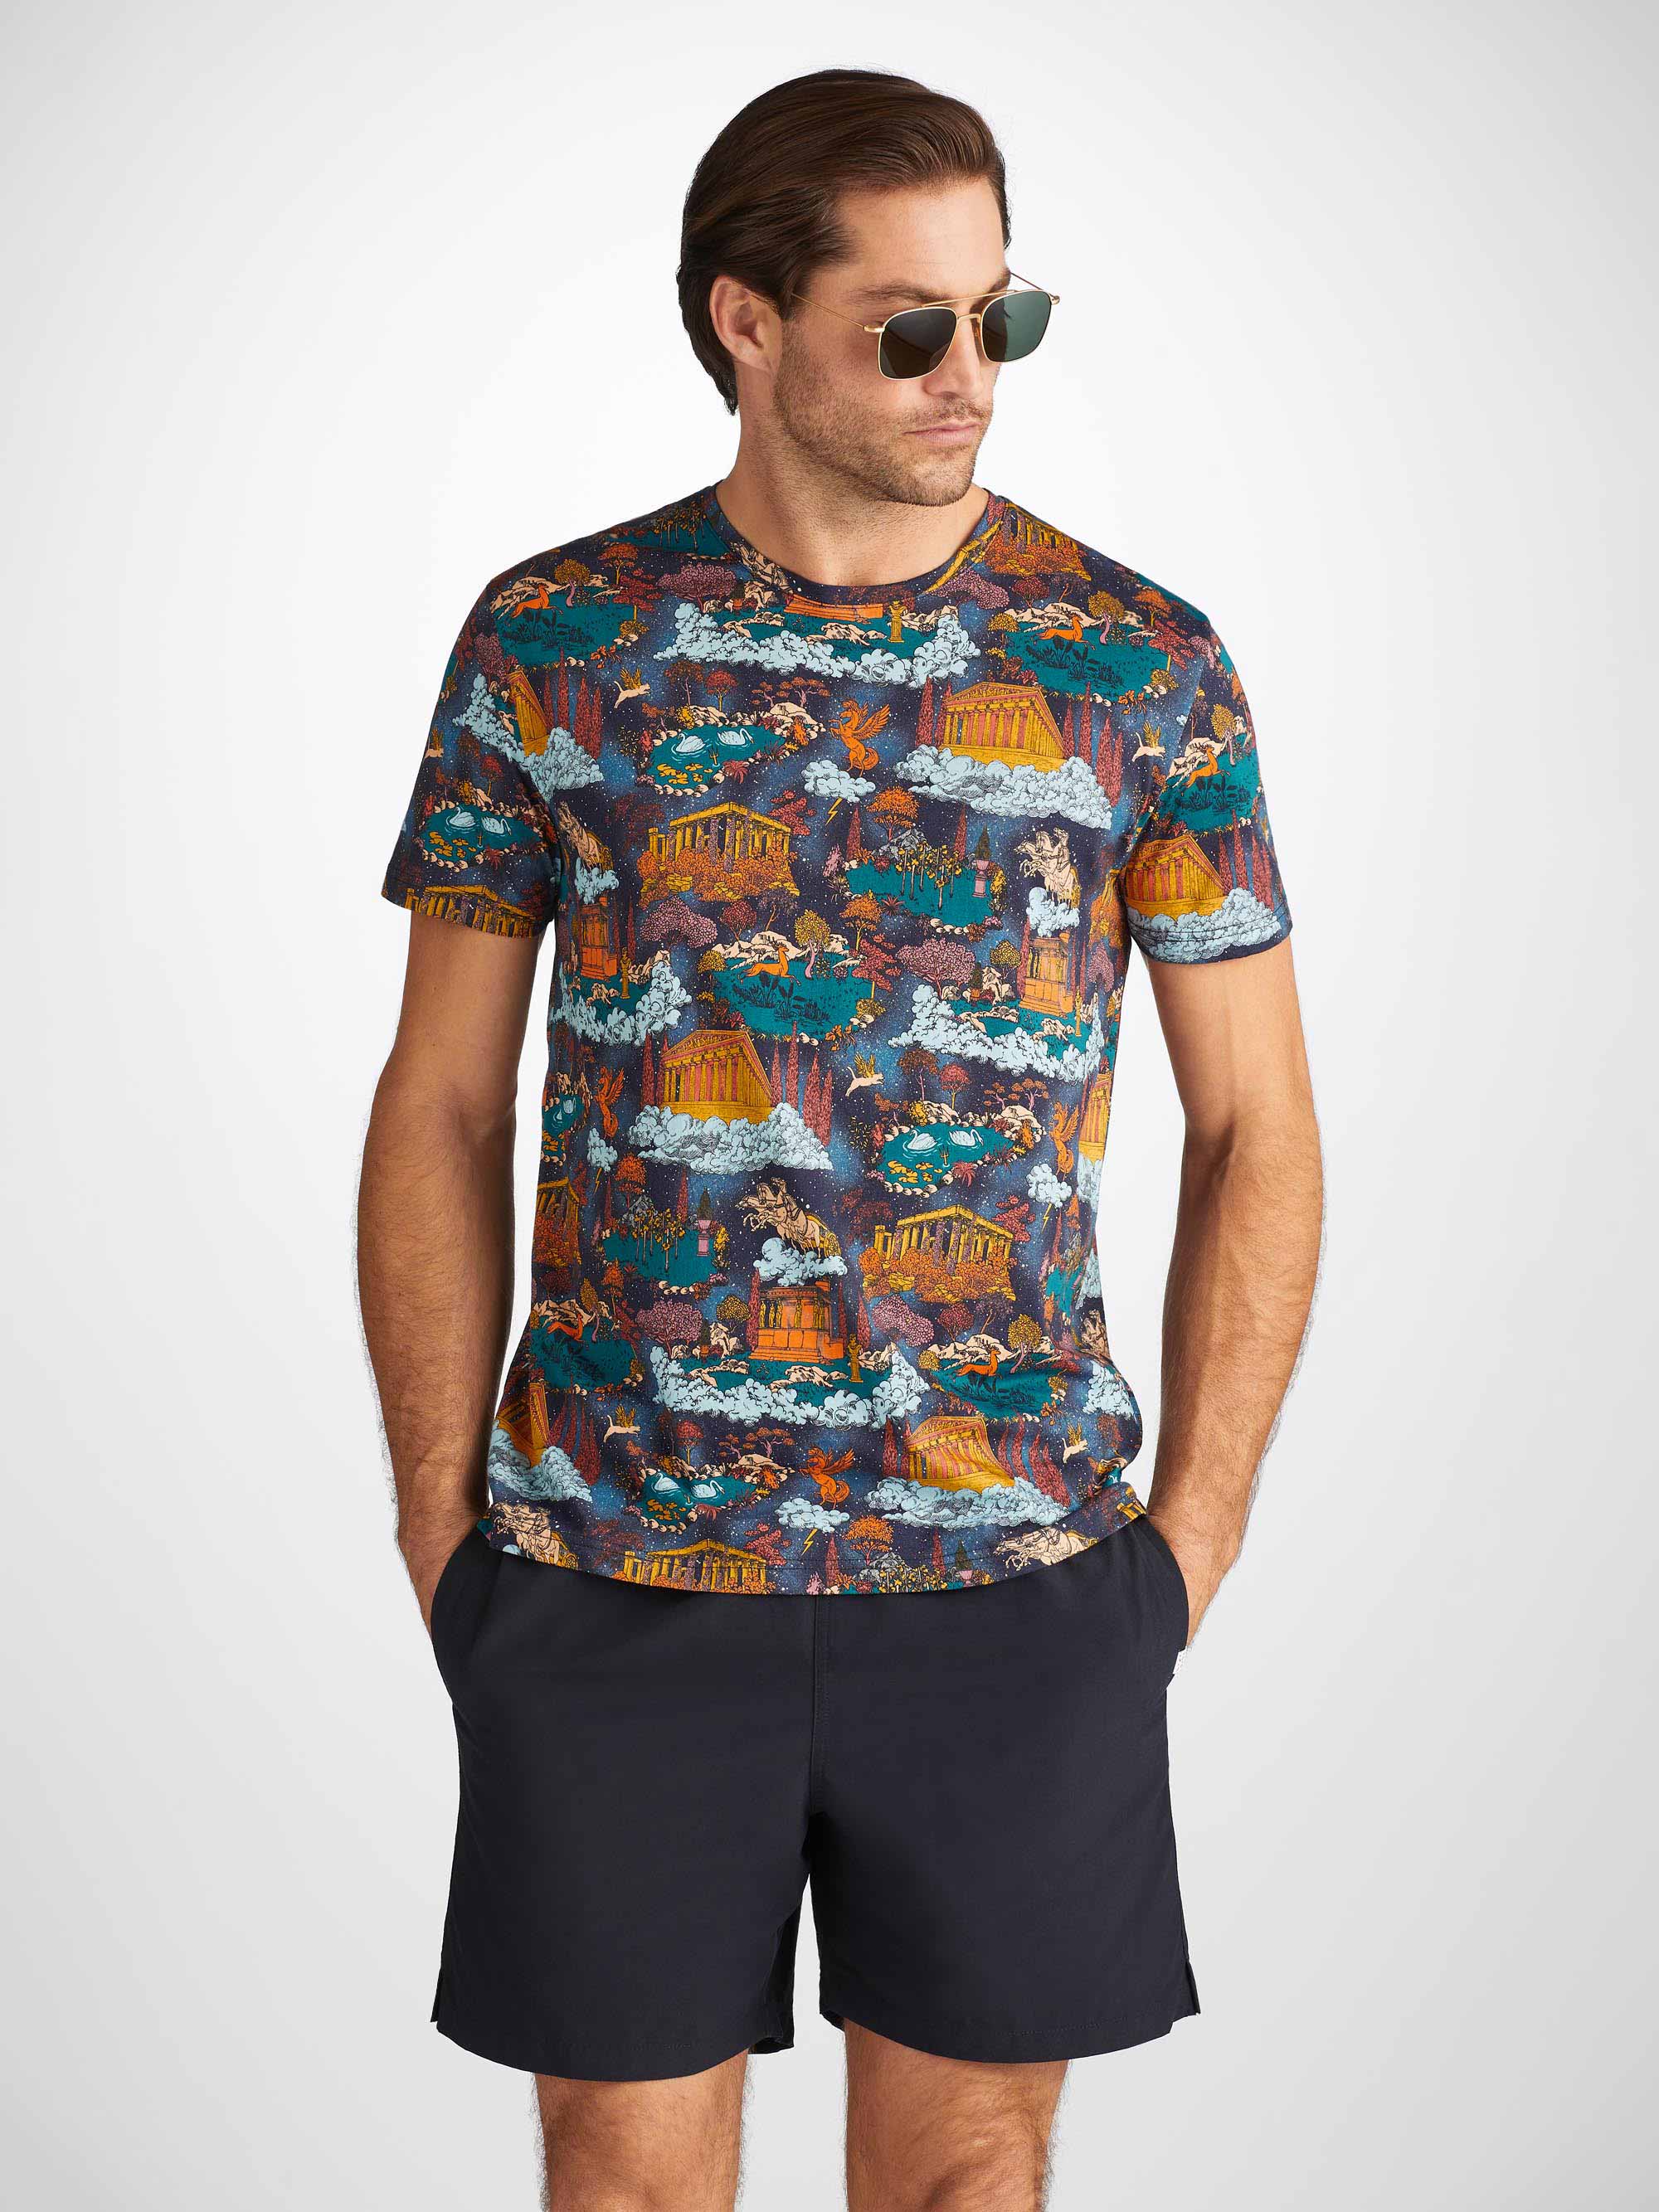 Men's T-Shirt Robin 15 Pima Cotton Multi